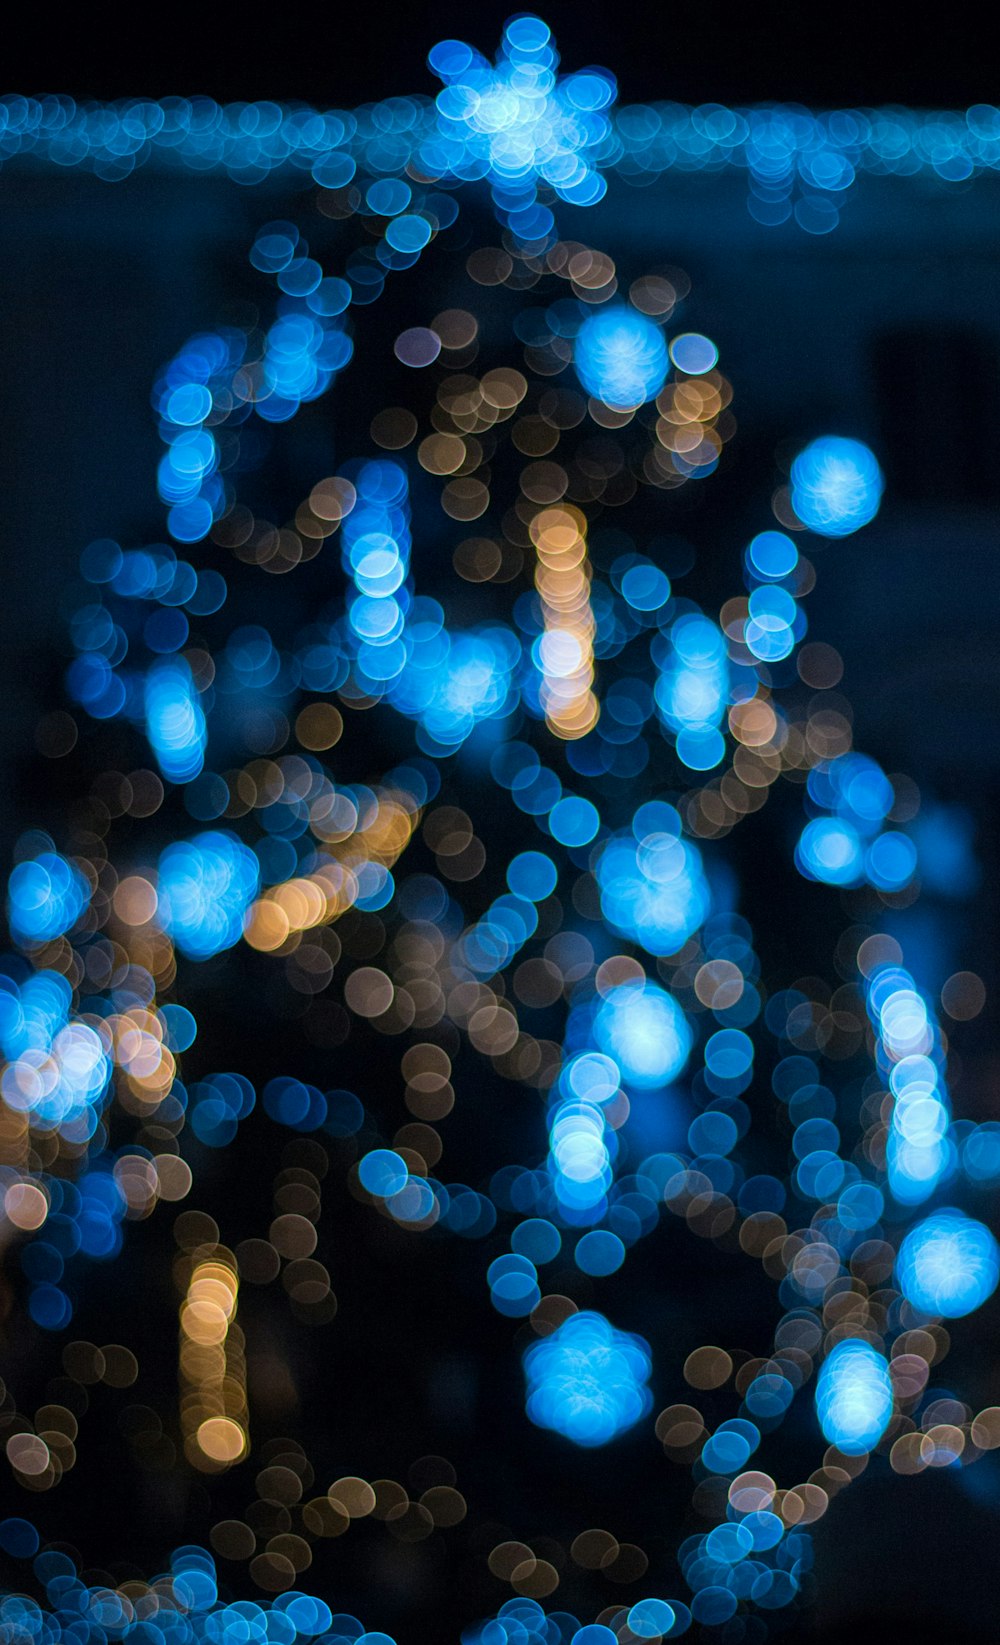 Une photo floue d’un sapin de Noël bleu